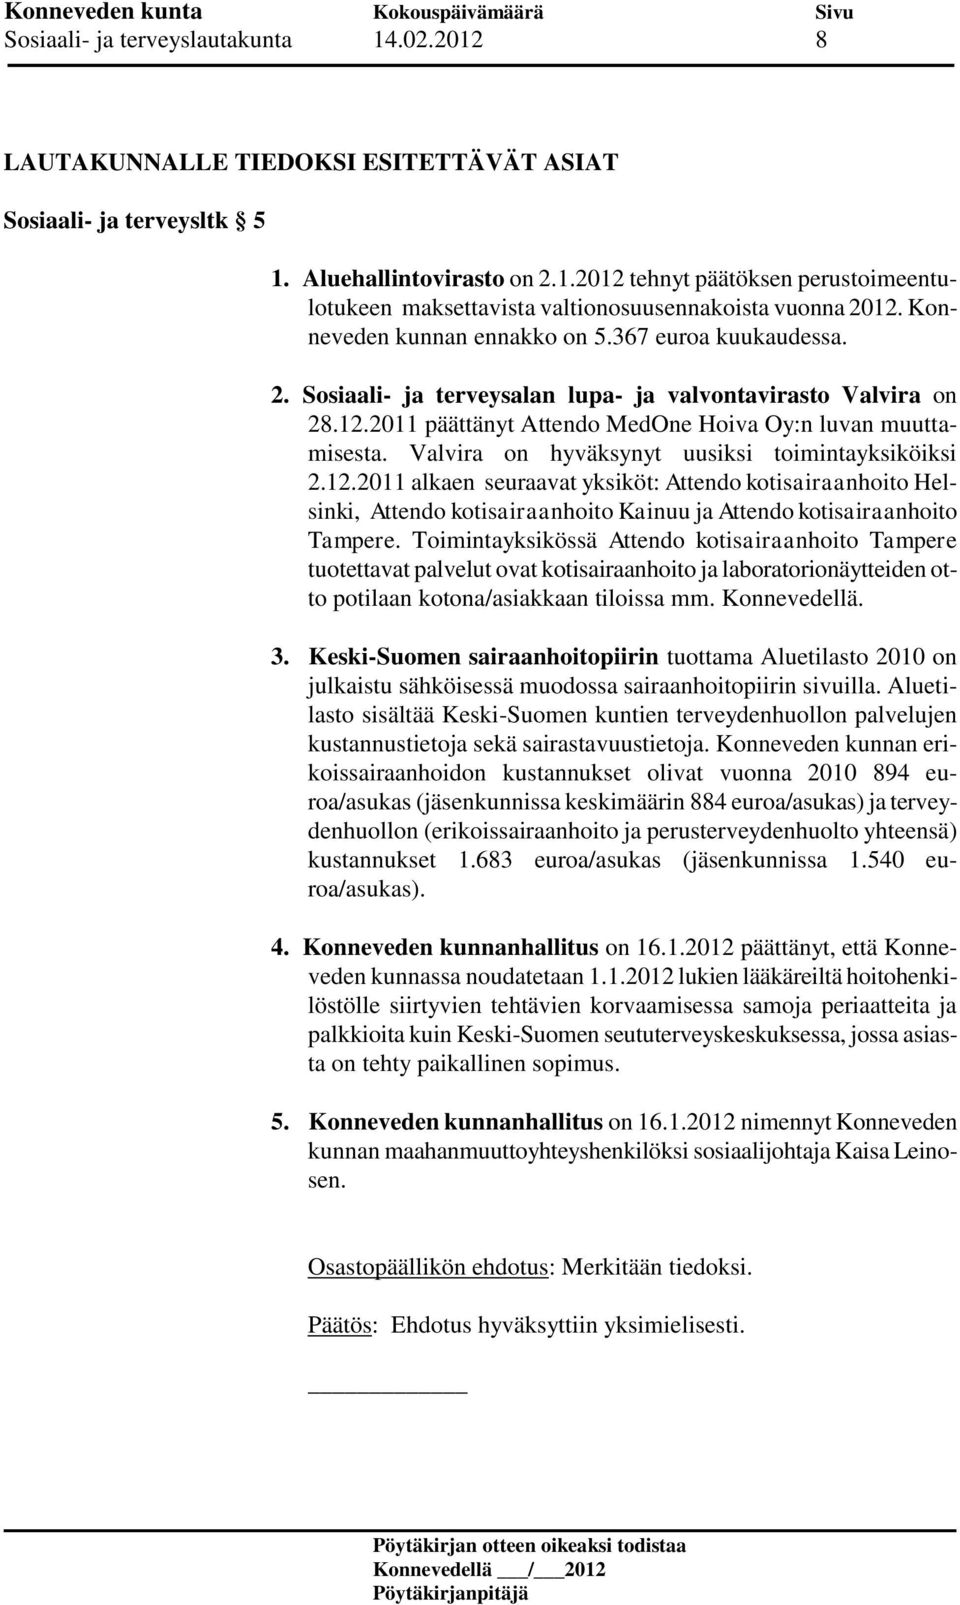 Valvira on hyväksynyt uusiksi toimintayksiköiksi 2.12.2011 alkaen seuraavat yksiköt: Attendo kotisairaanhoito Helsinki, Attendo kotisairaanhoito Kainuu ja Attendo kotisairaanhoito Tampere.